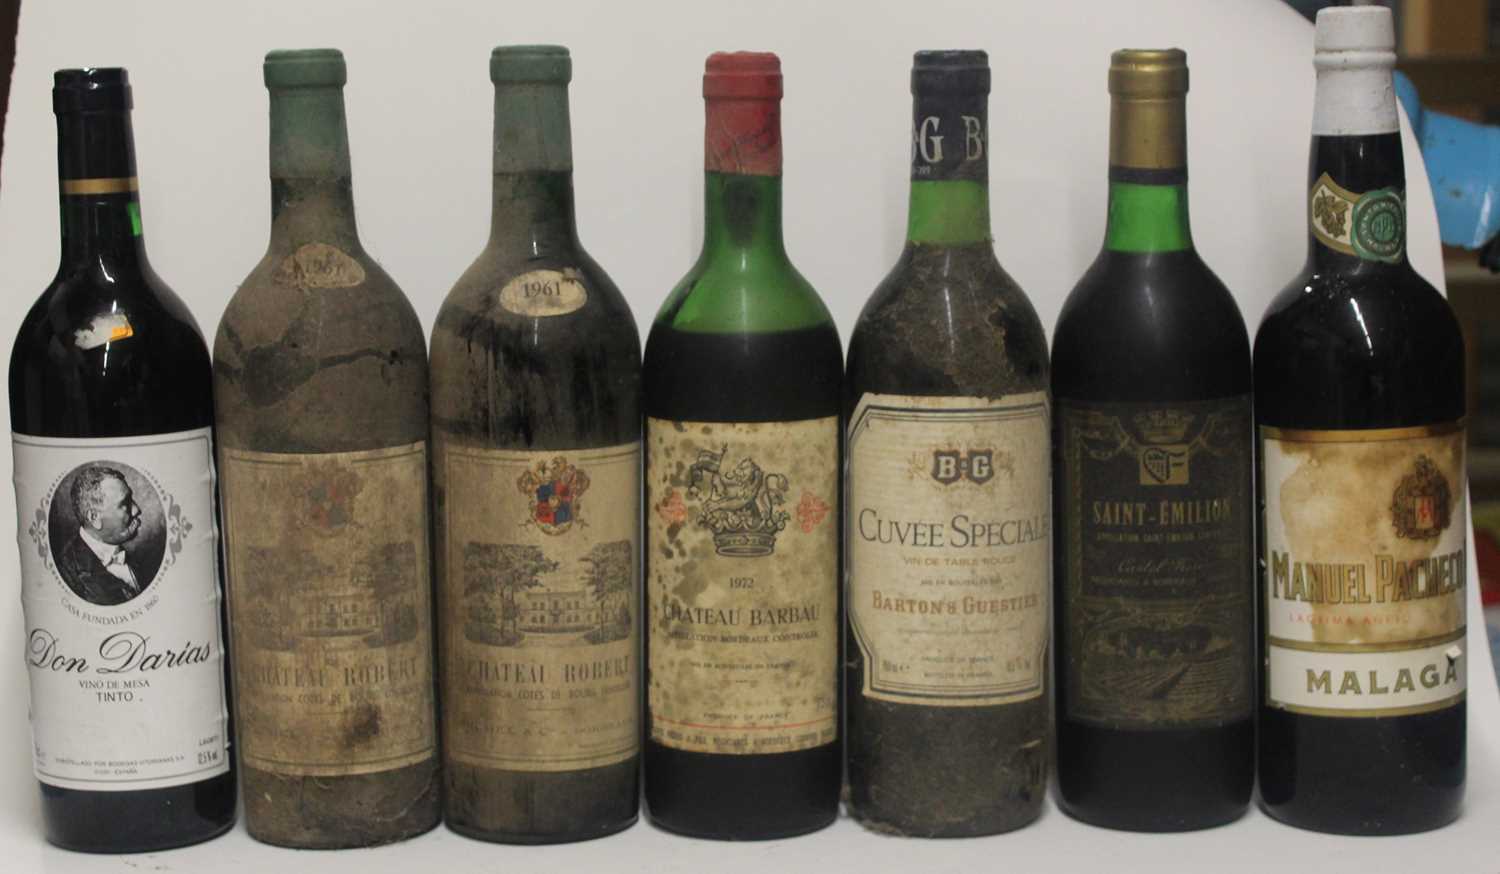 Château Robert, 1961, Bordeaux, two bottles; Château Barbau, 1972, Bordeaux, one bottle; Barton &